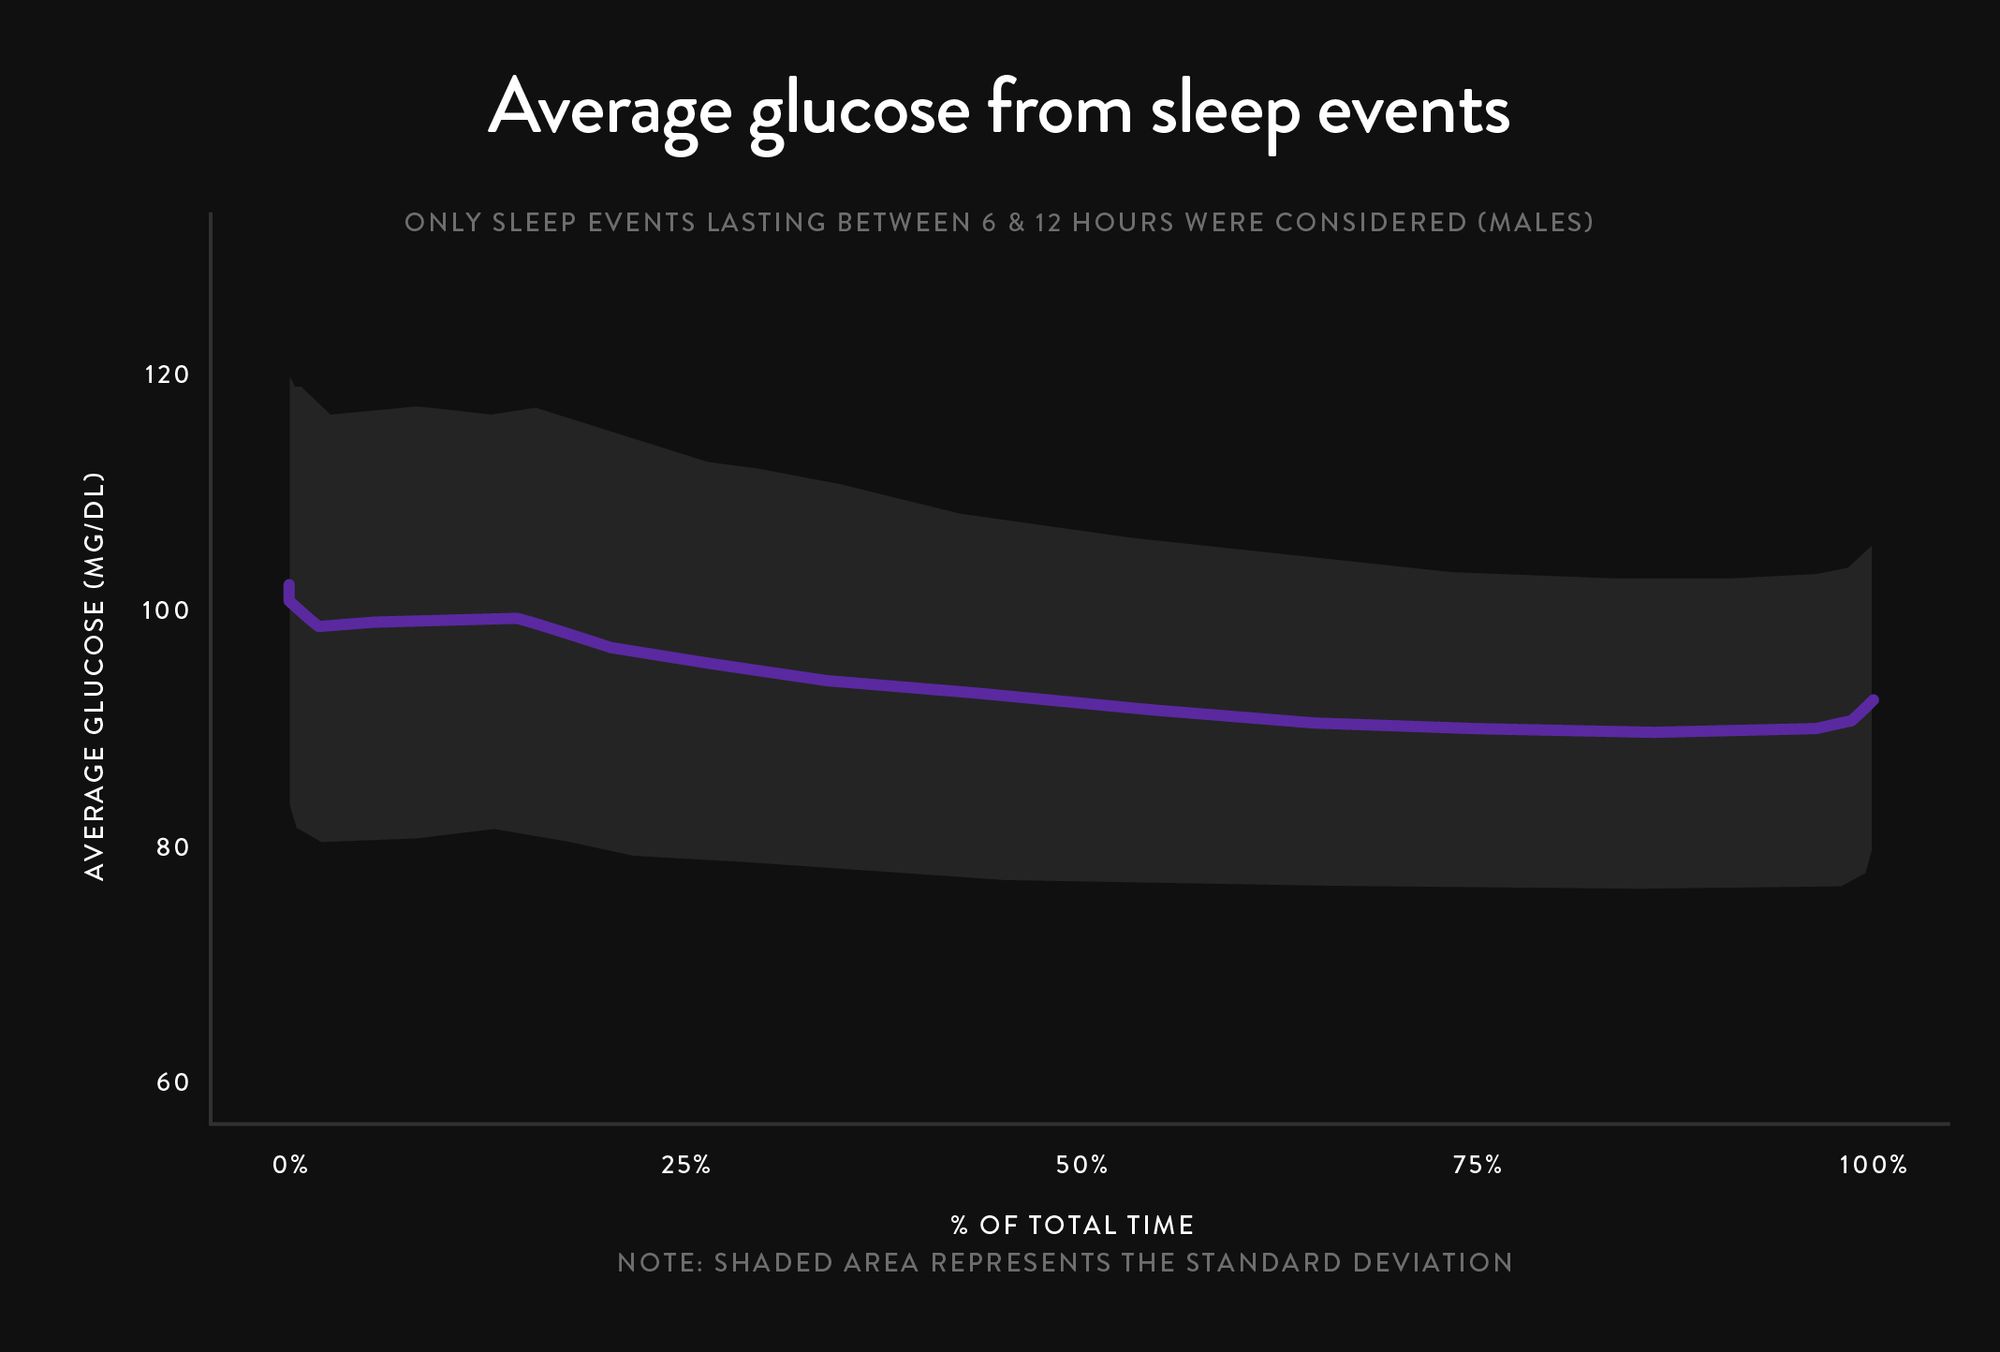 Men's CGM sleep glucose data from Supersapiens